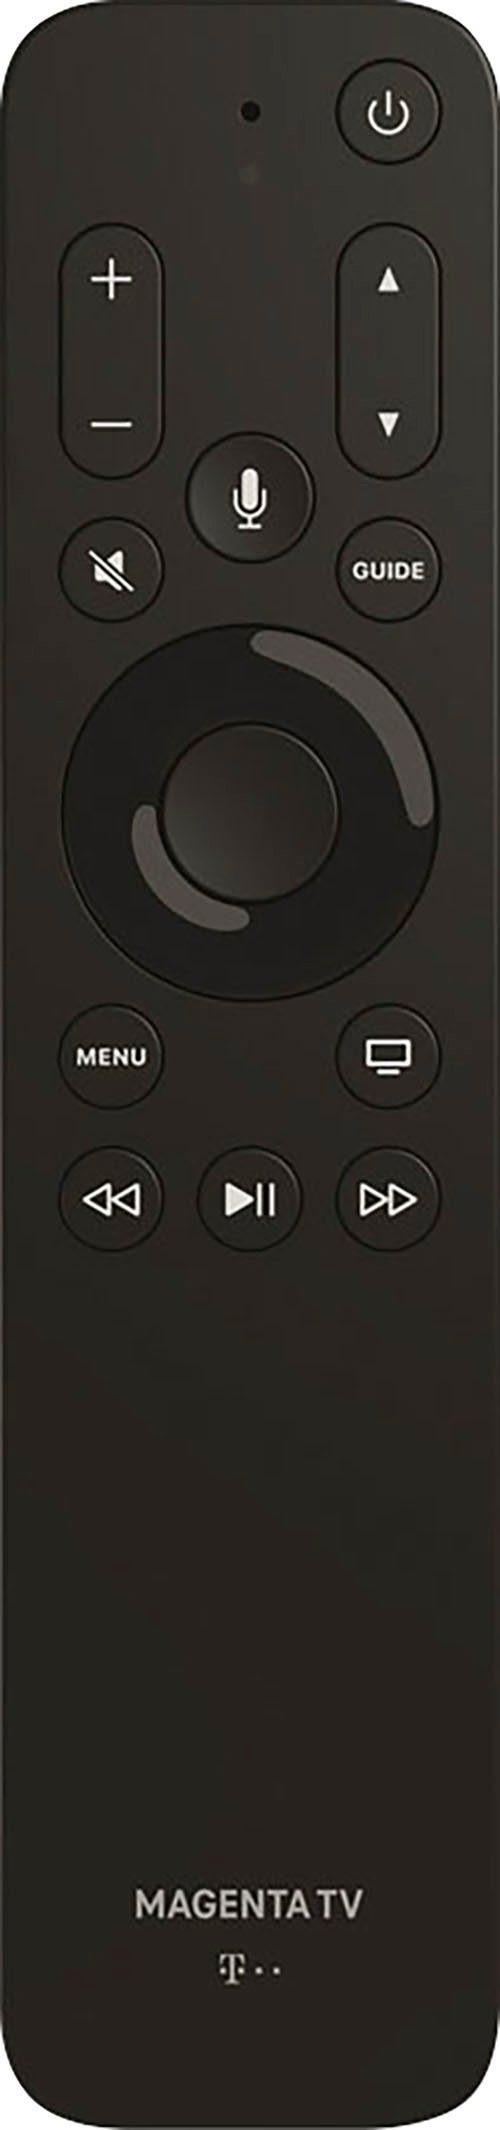 Telekom Magenta TV Fernbedienung für Apple TV Fernbedienung